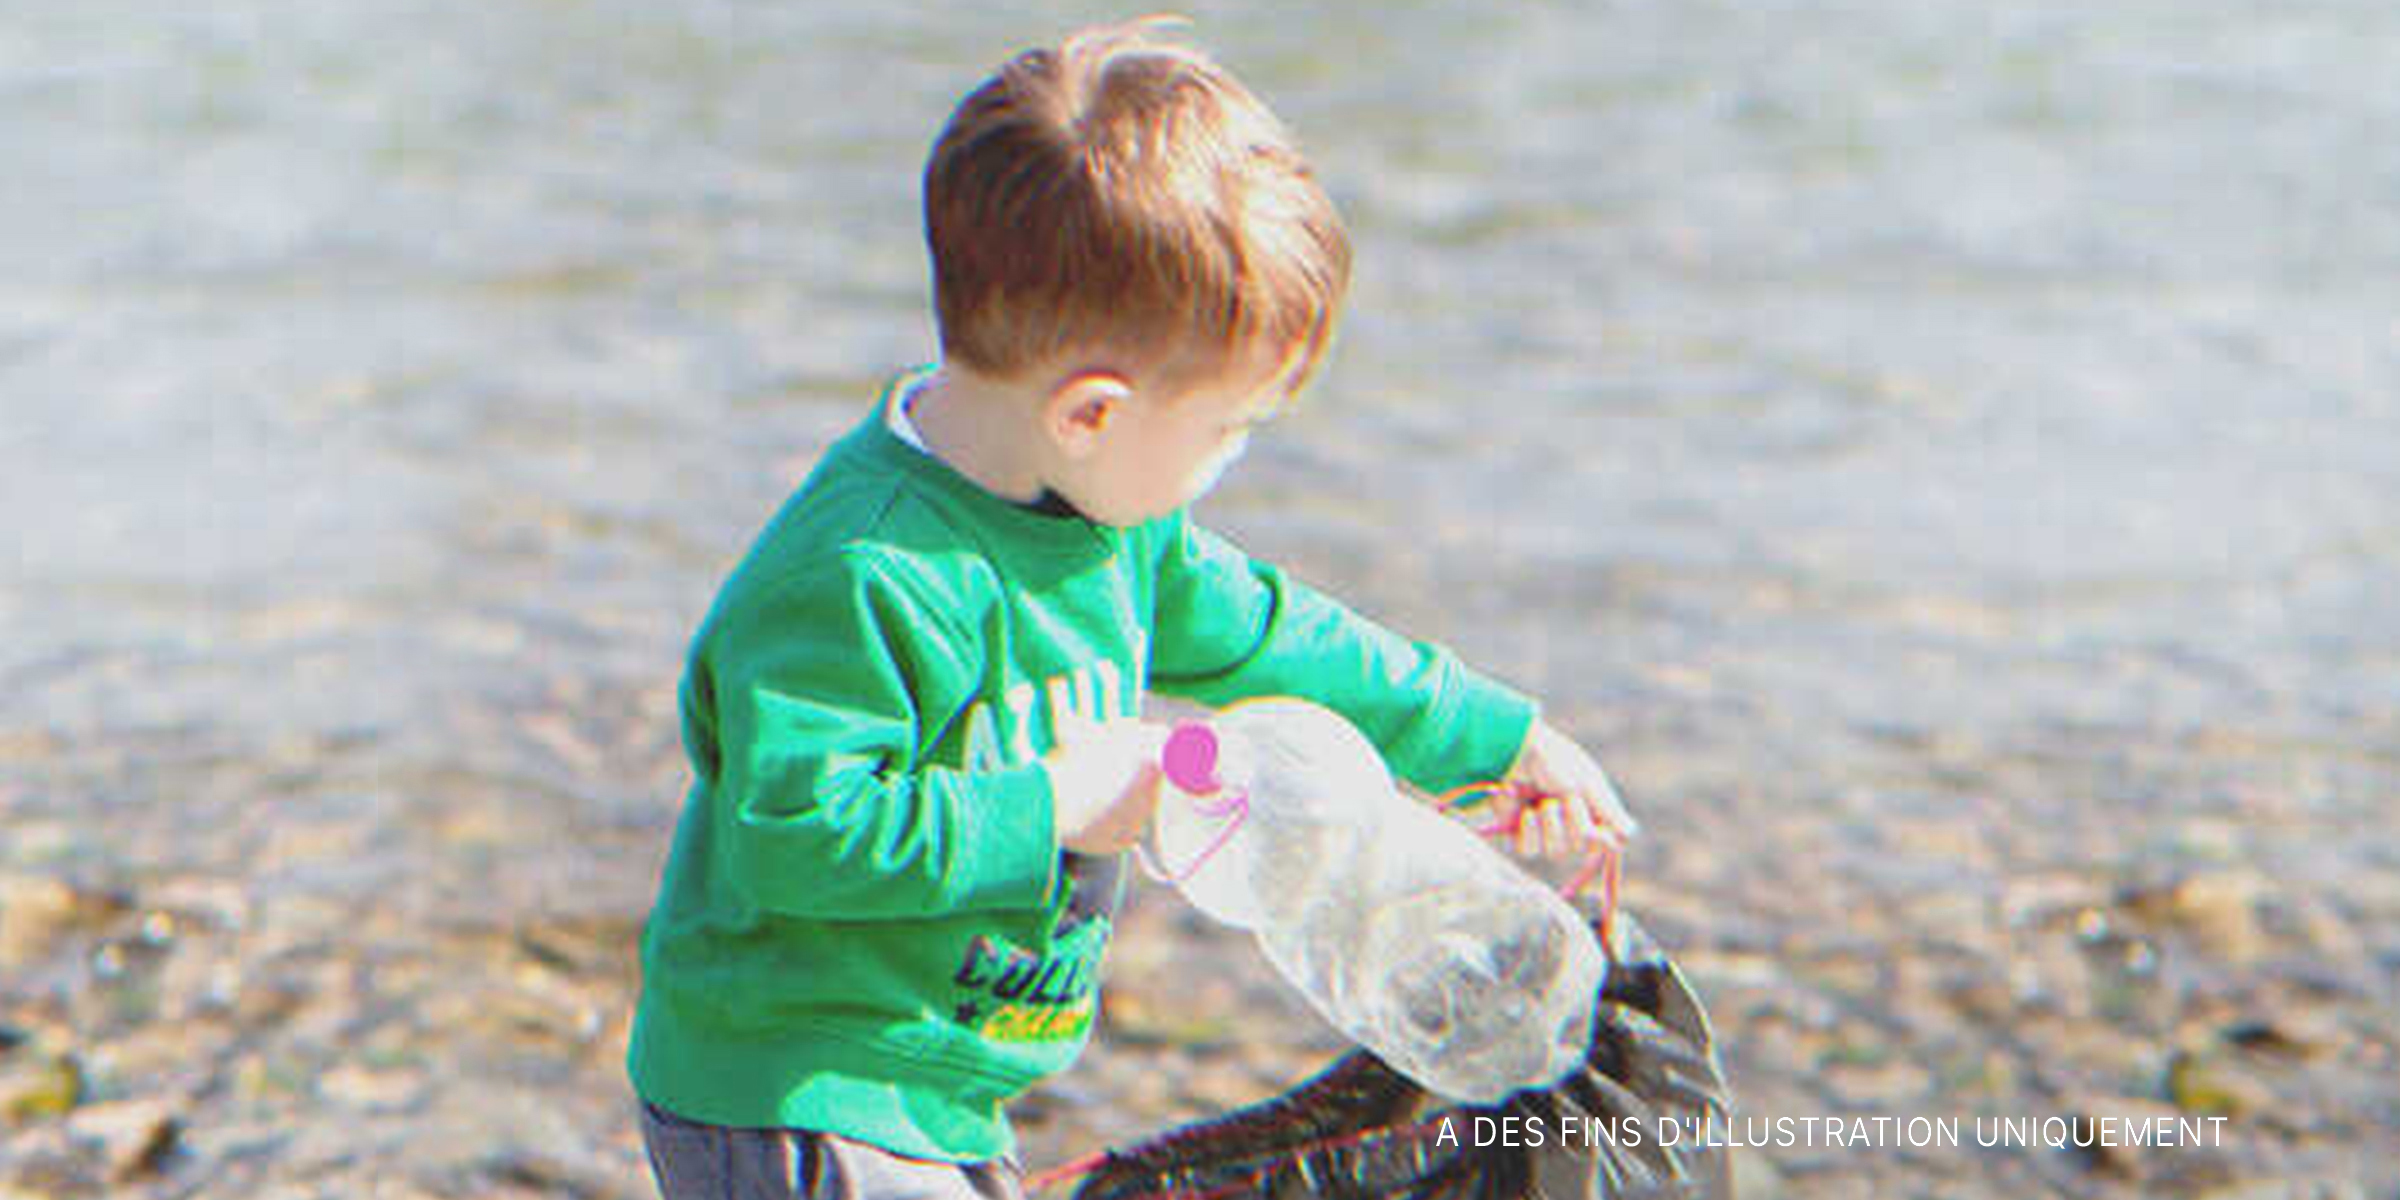 Un garçon qui ramasse des bouteilles | Source : Shutterstock